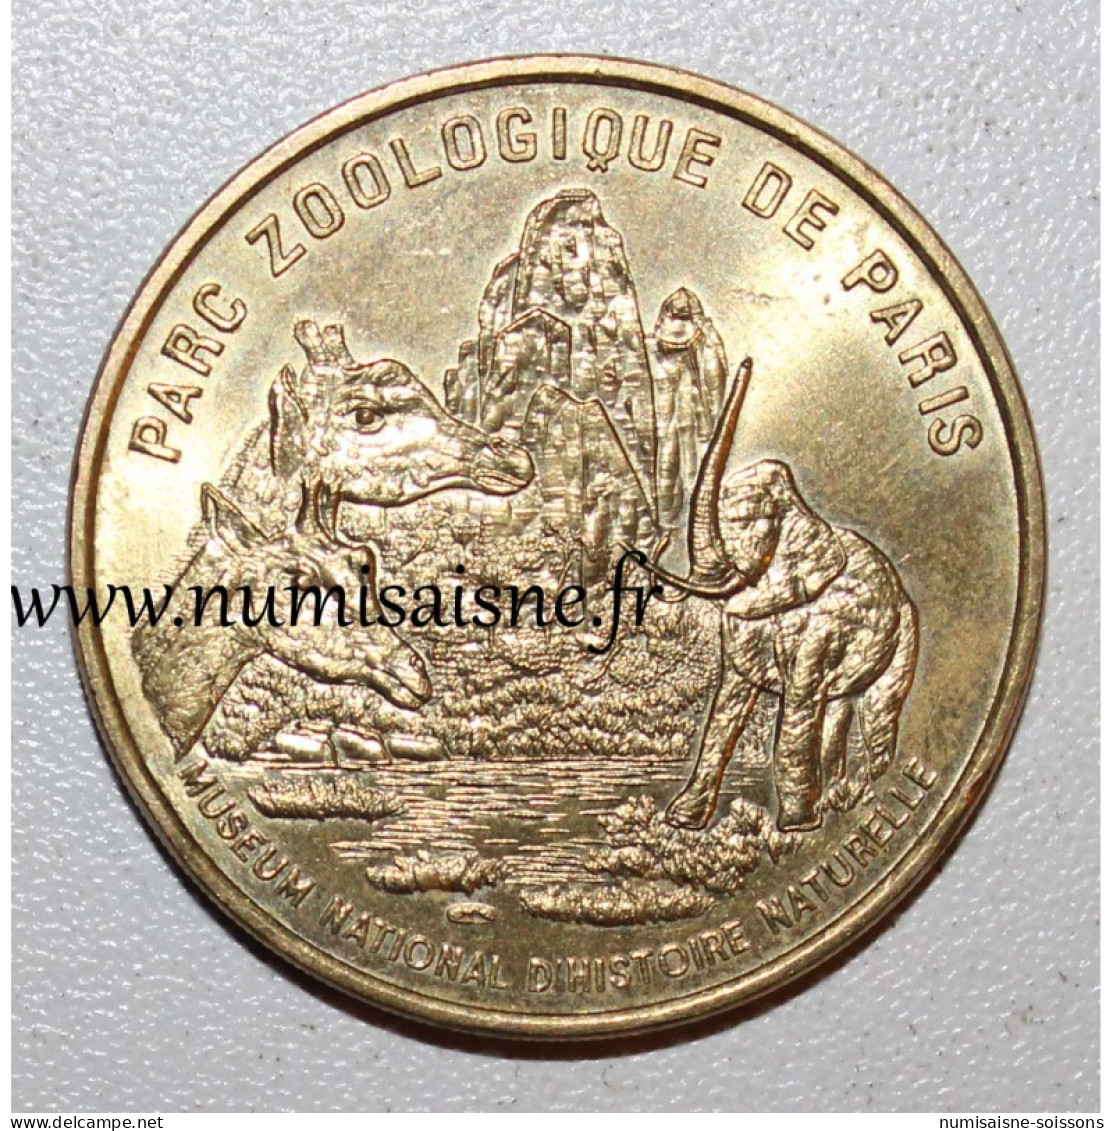 75 - PARIS - PARC ZOOLOGIQUE - Monnaie De Paris - 1998 - TTB/SUP - Ohne Datum